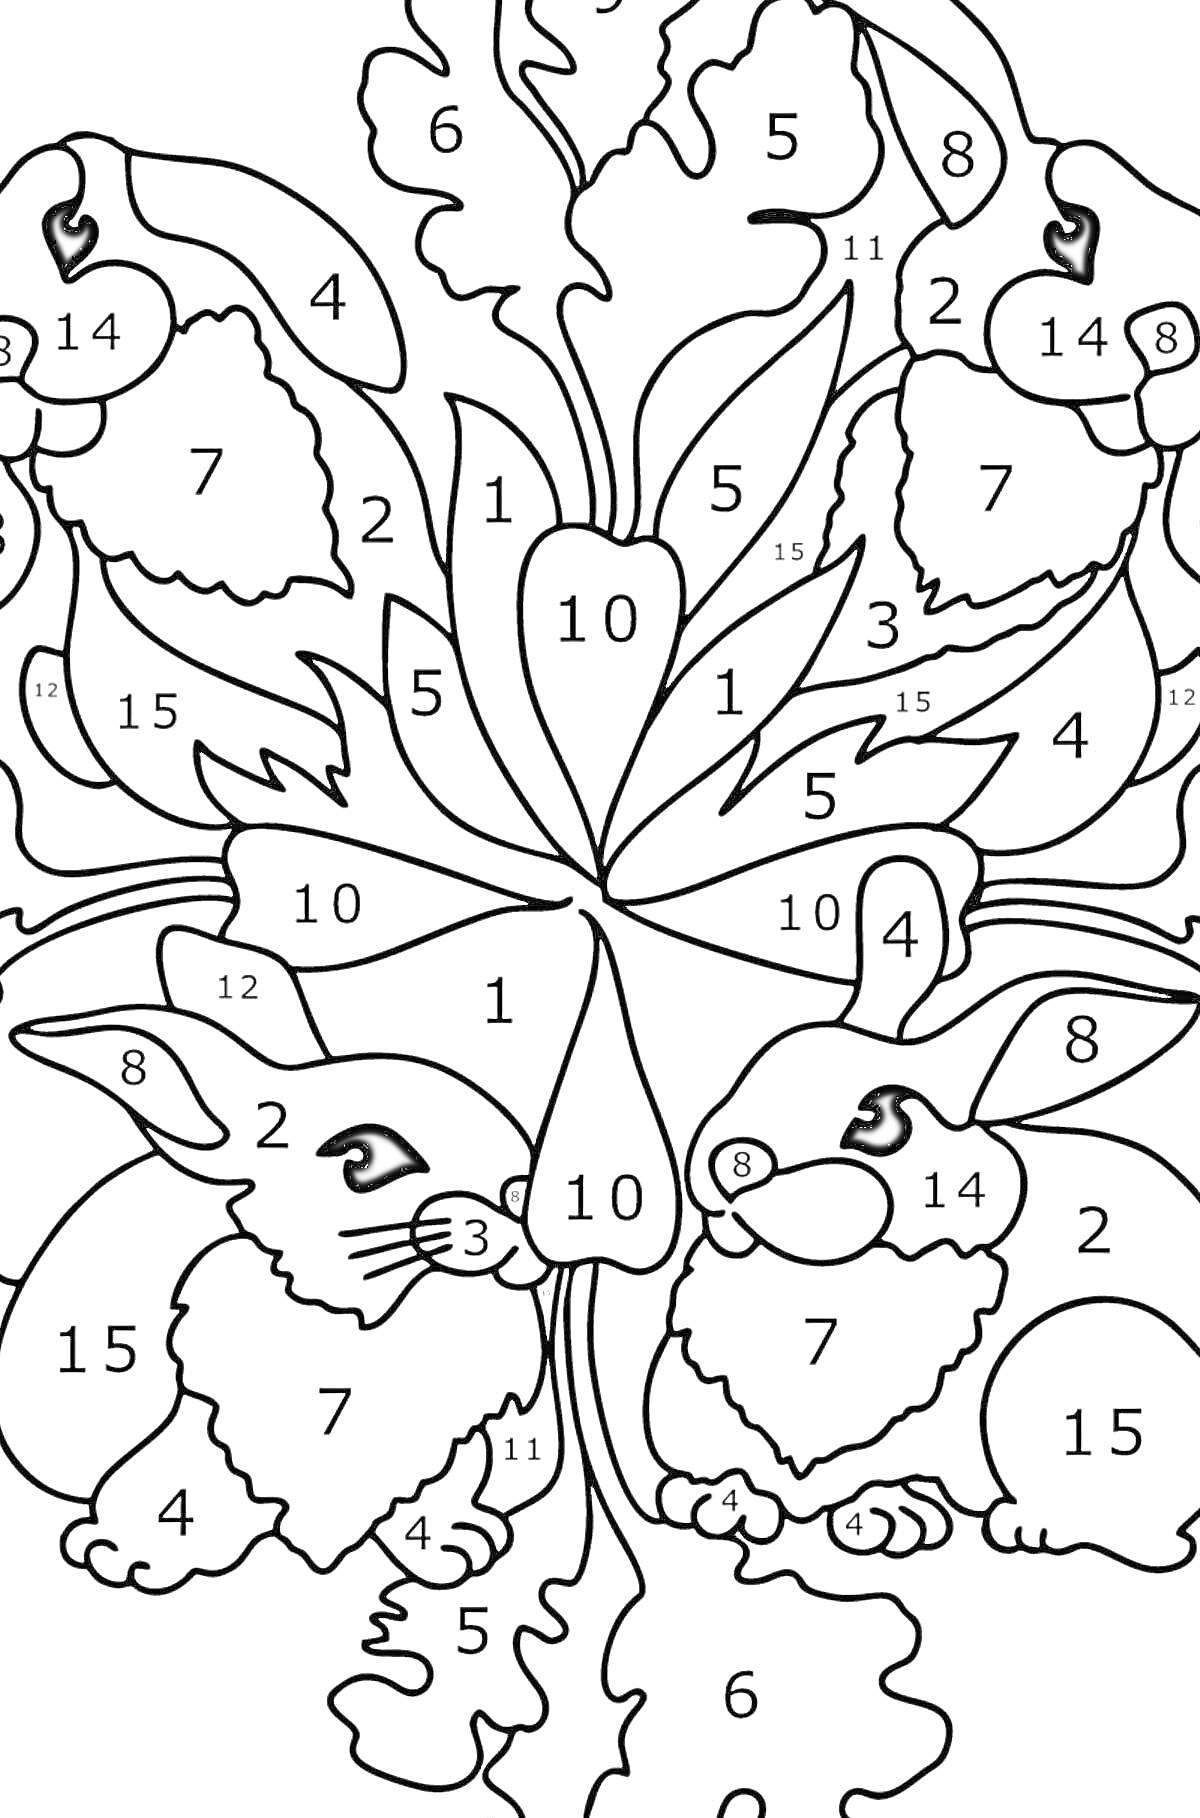 Раскраска Зайчики в лесу среди листьев и плодов - раскраска по номерам